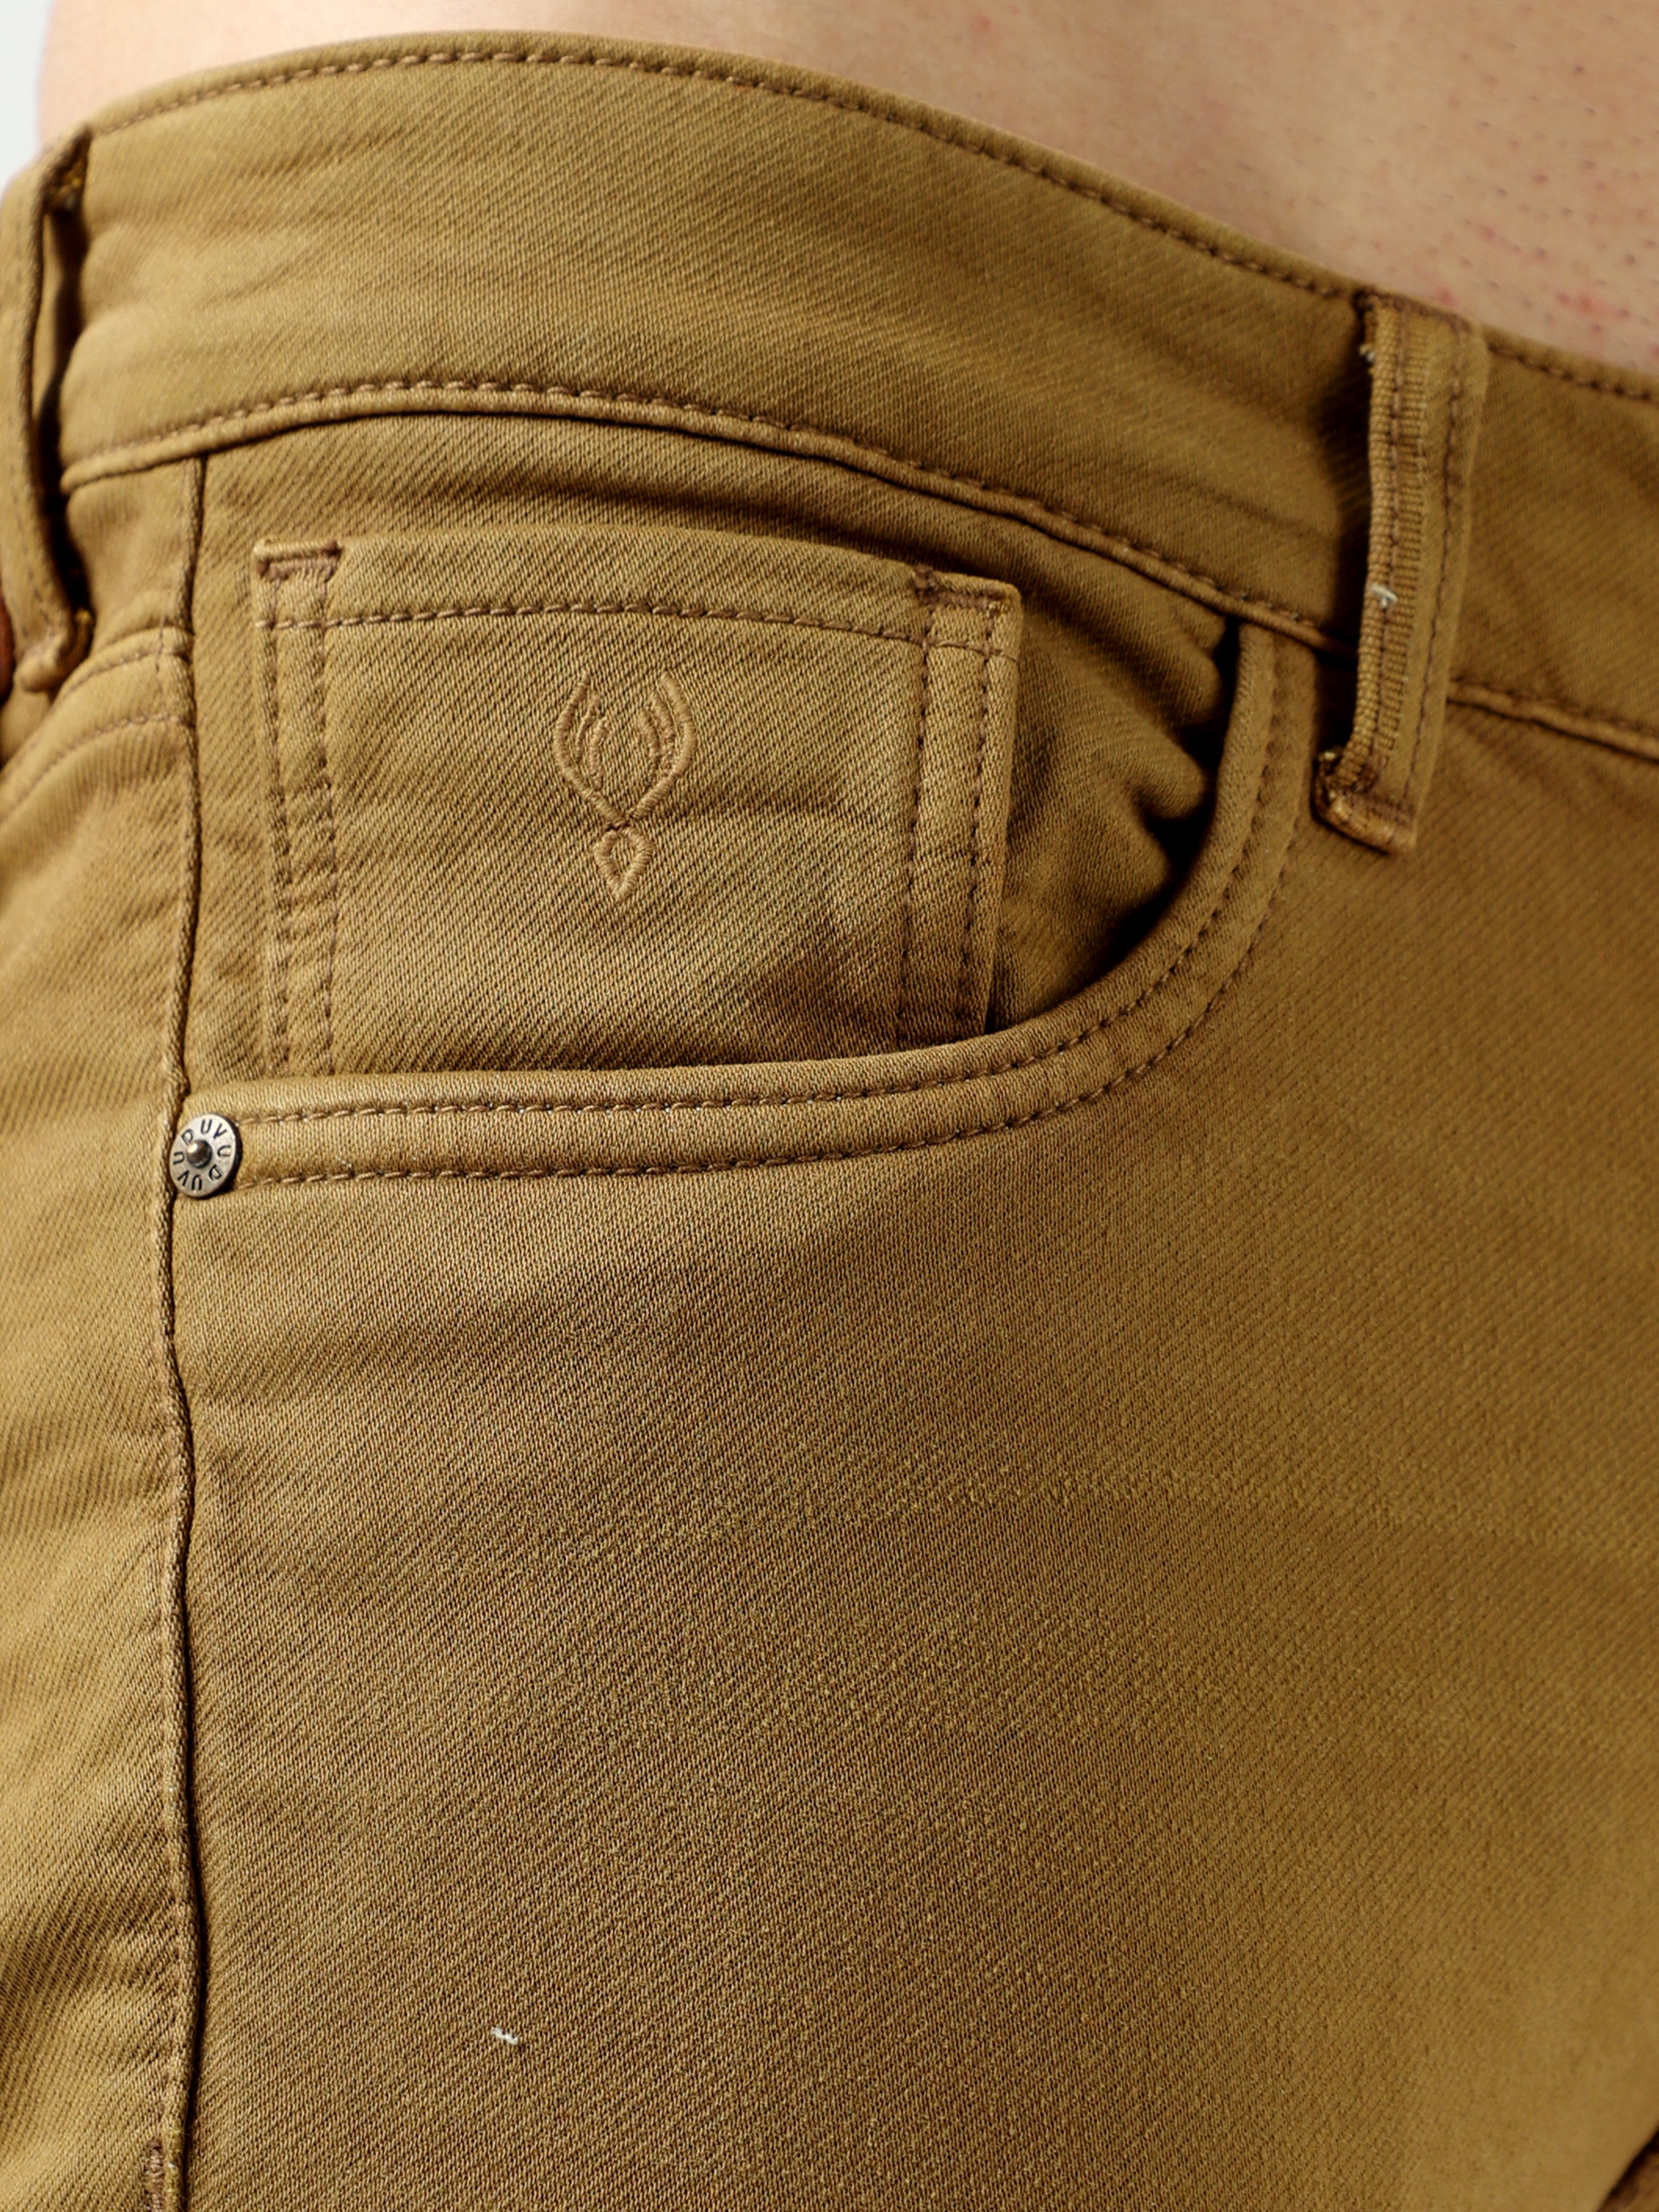 Buy Reggy Caldo Men's Khaki Denim Jeans (Beige, 30) at Amazon.in